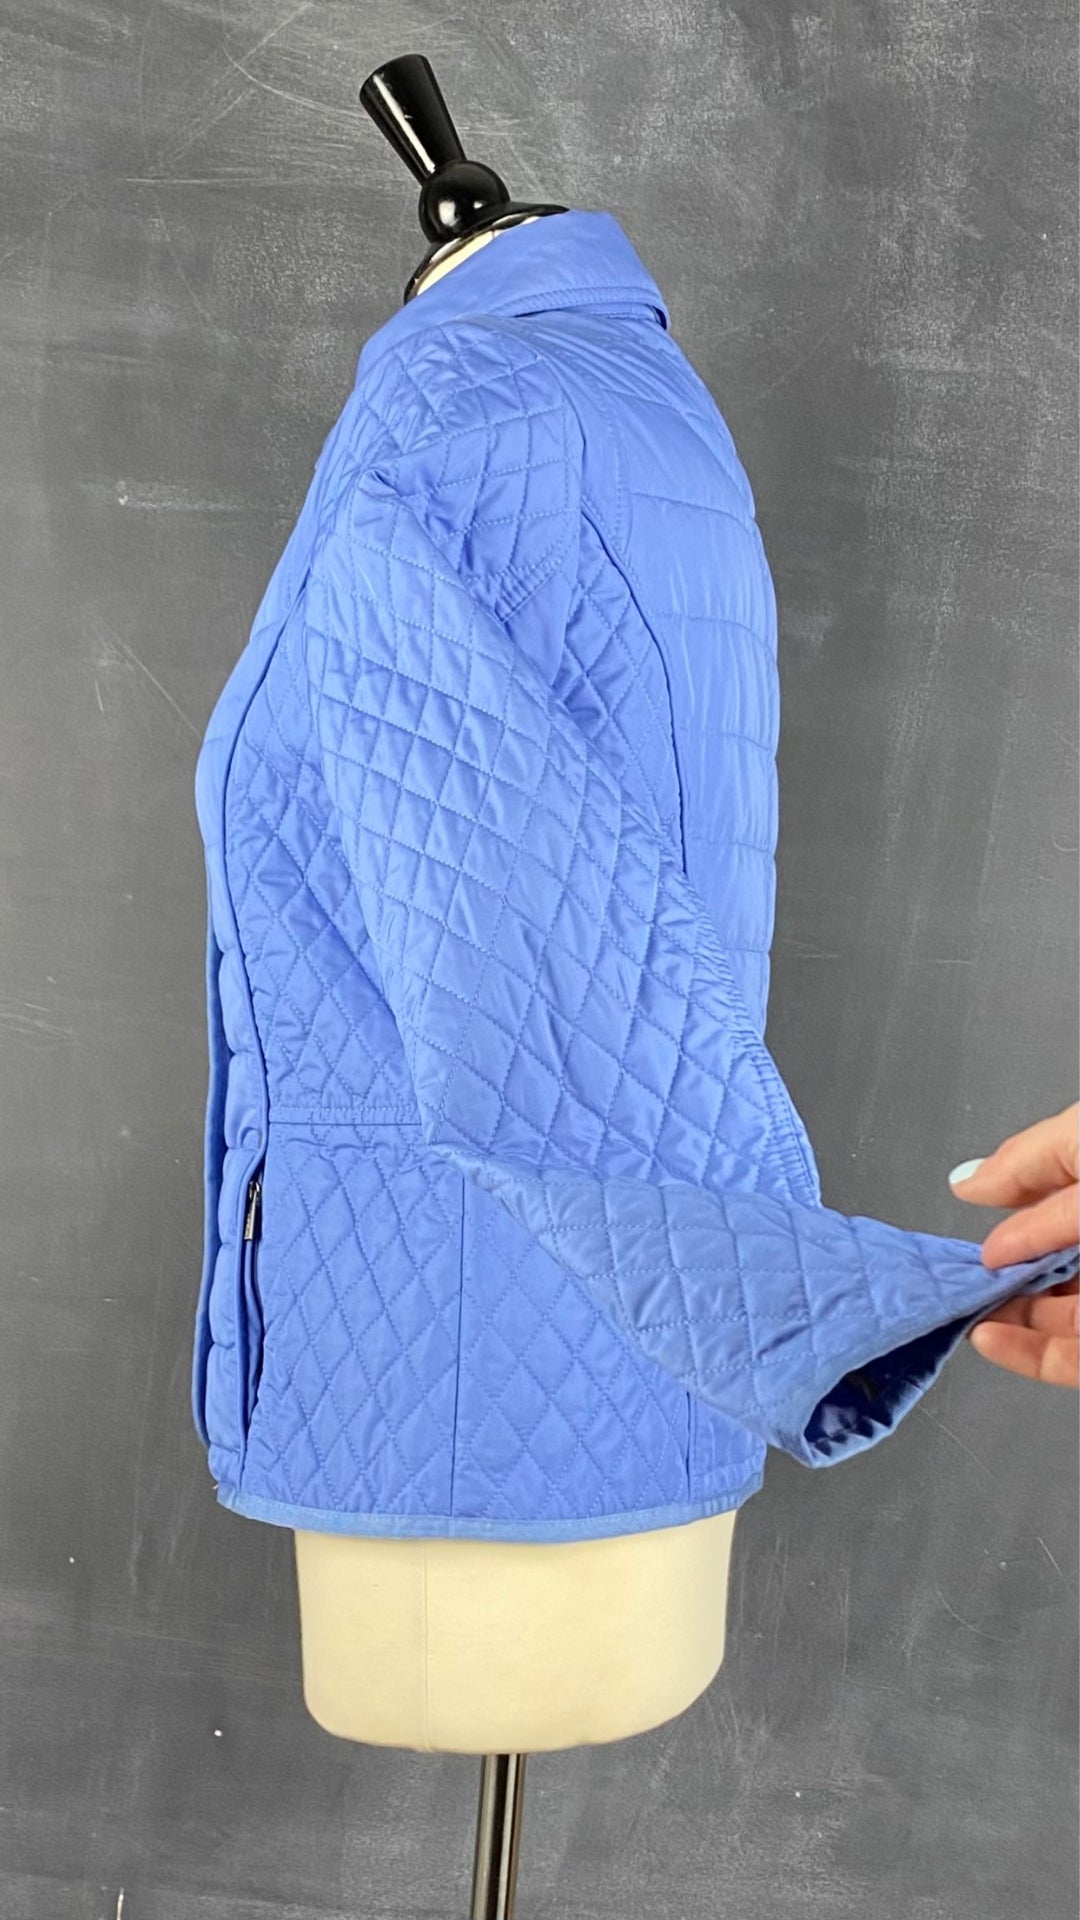 Veste printanière matelassée bleu lavande Olsen, taille xs/s. Vue de côté.